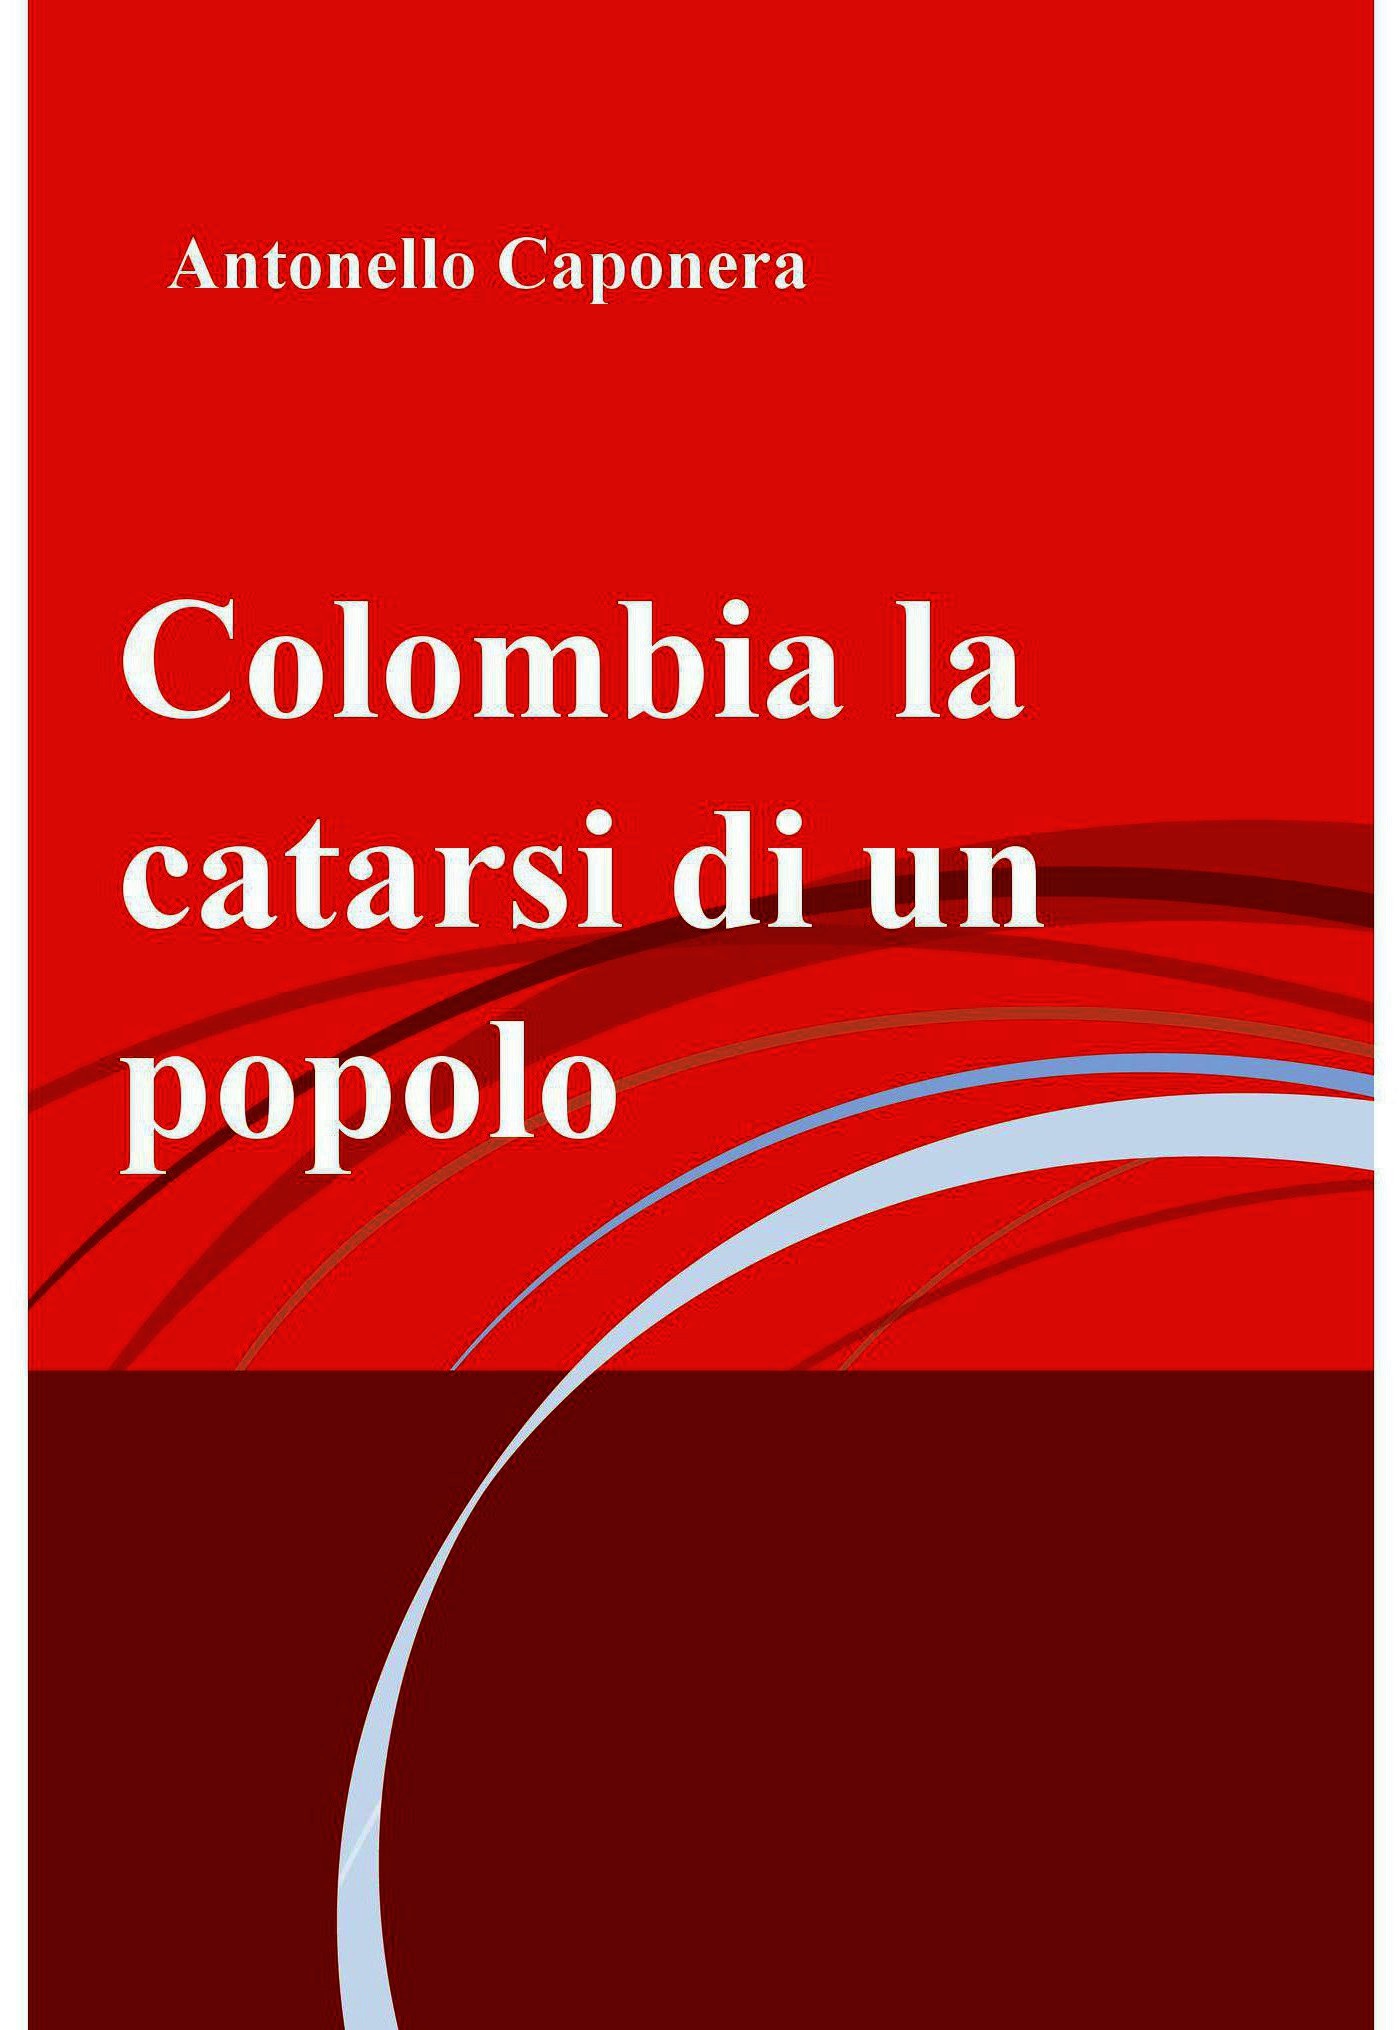 Colombia la catarsi di un popolo - Librerie.coop